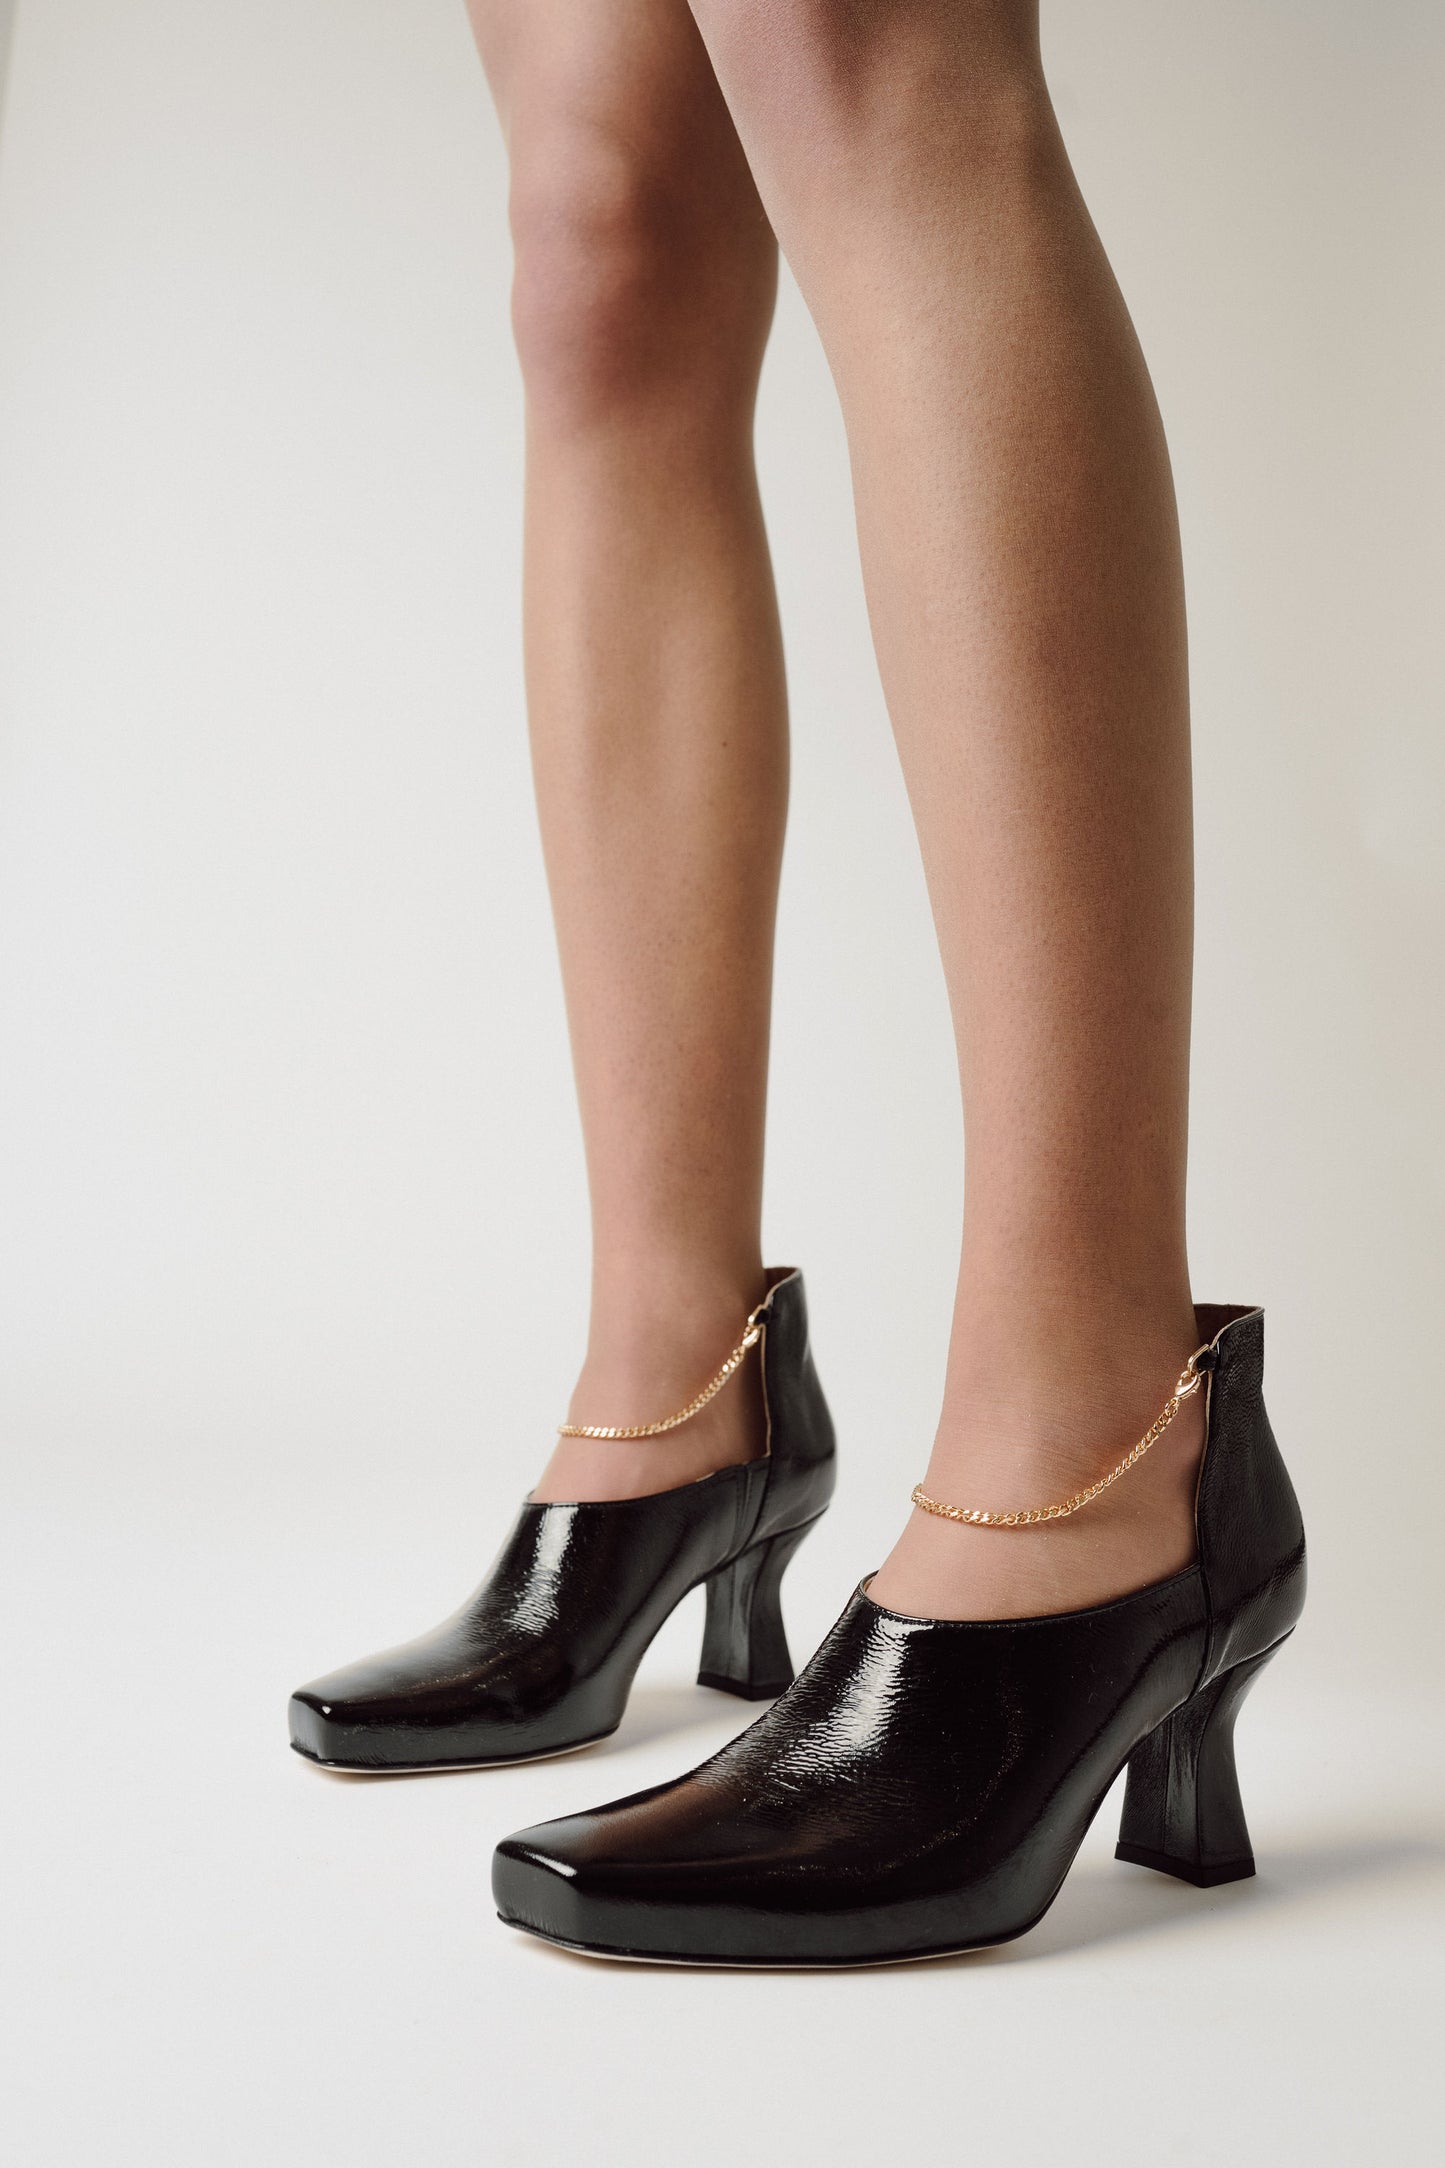 Womans legs with Kate Black Lack ShoeBoot